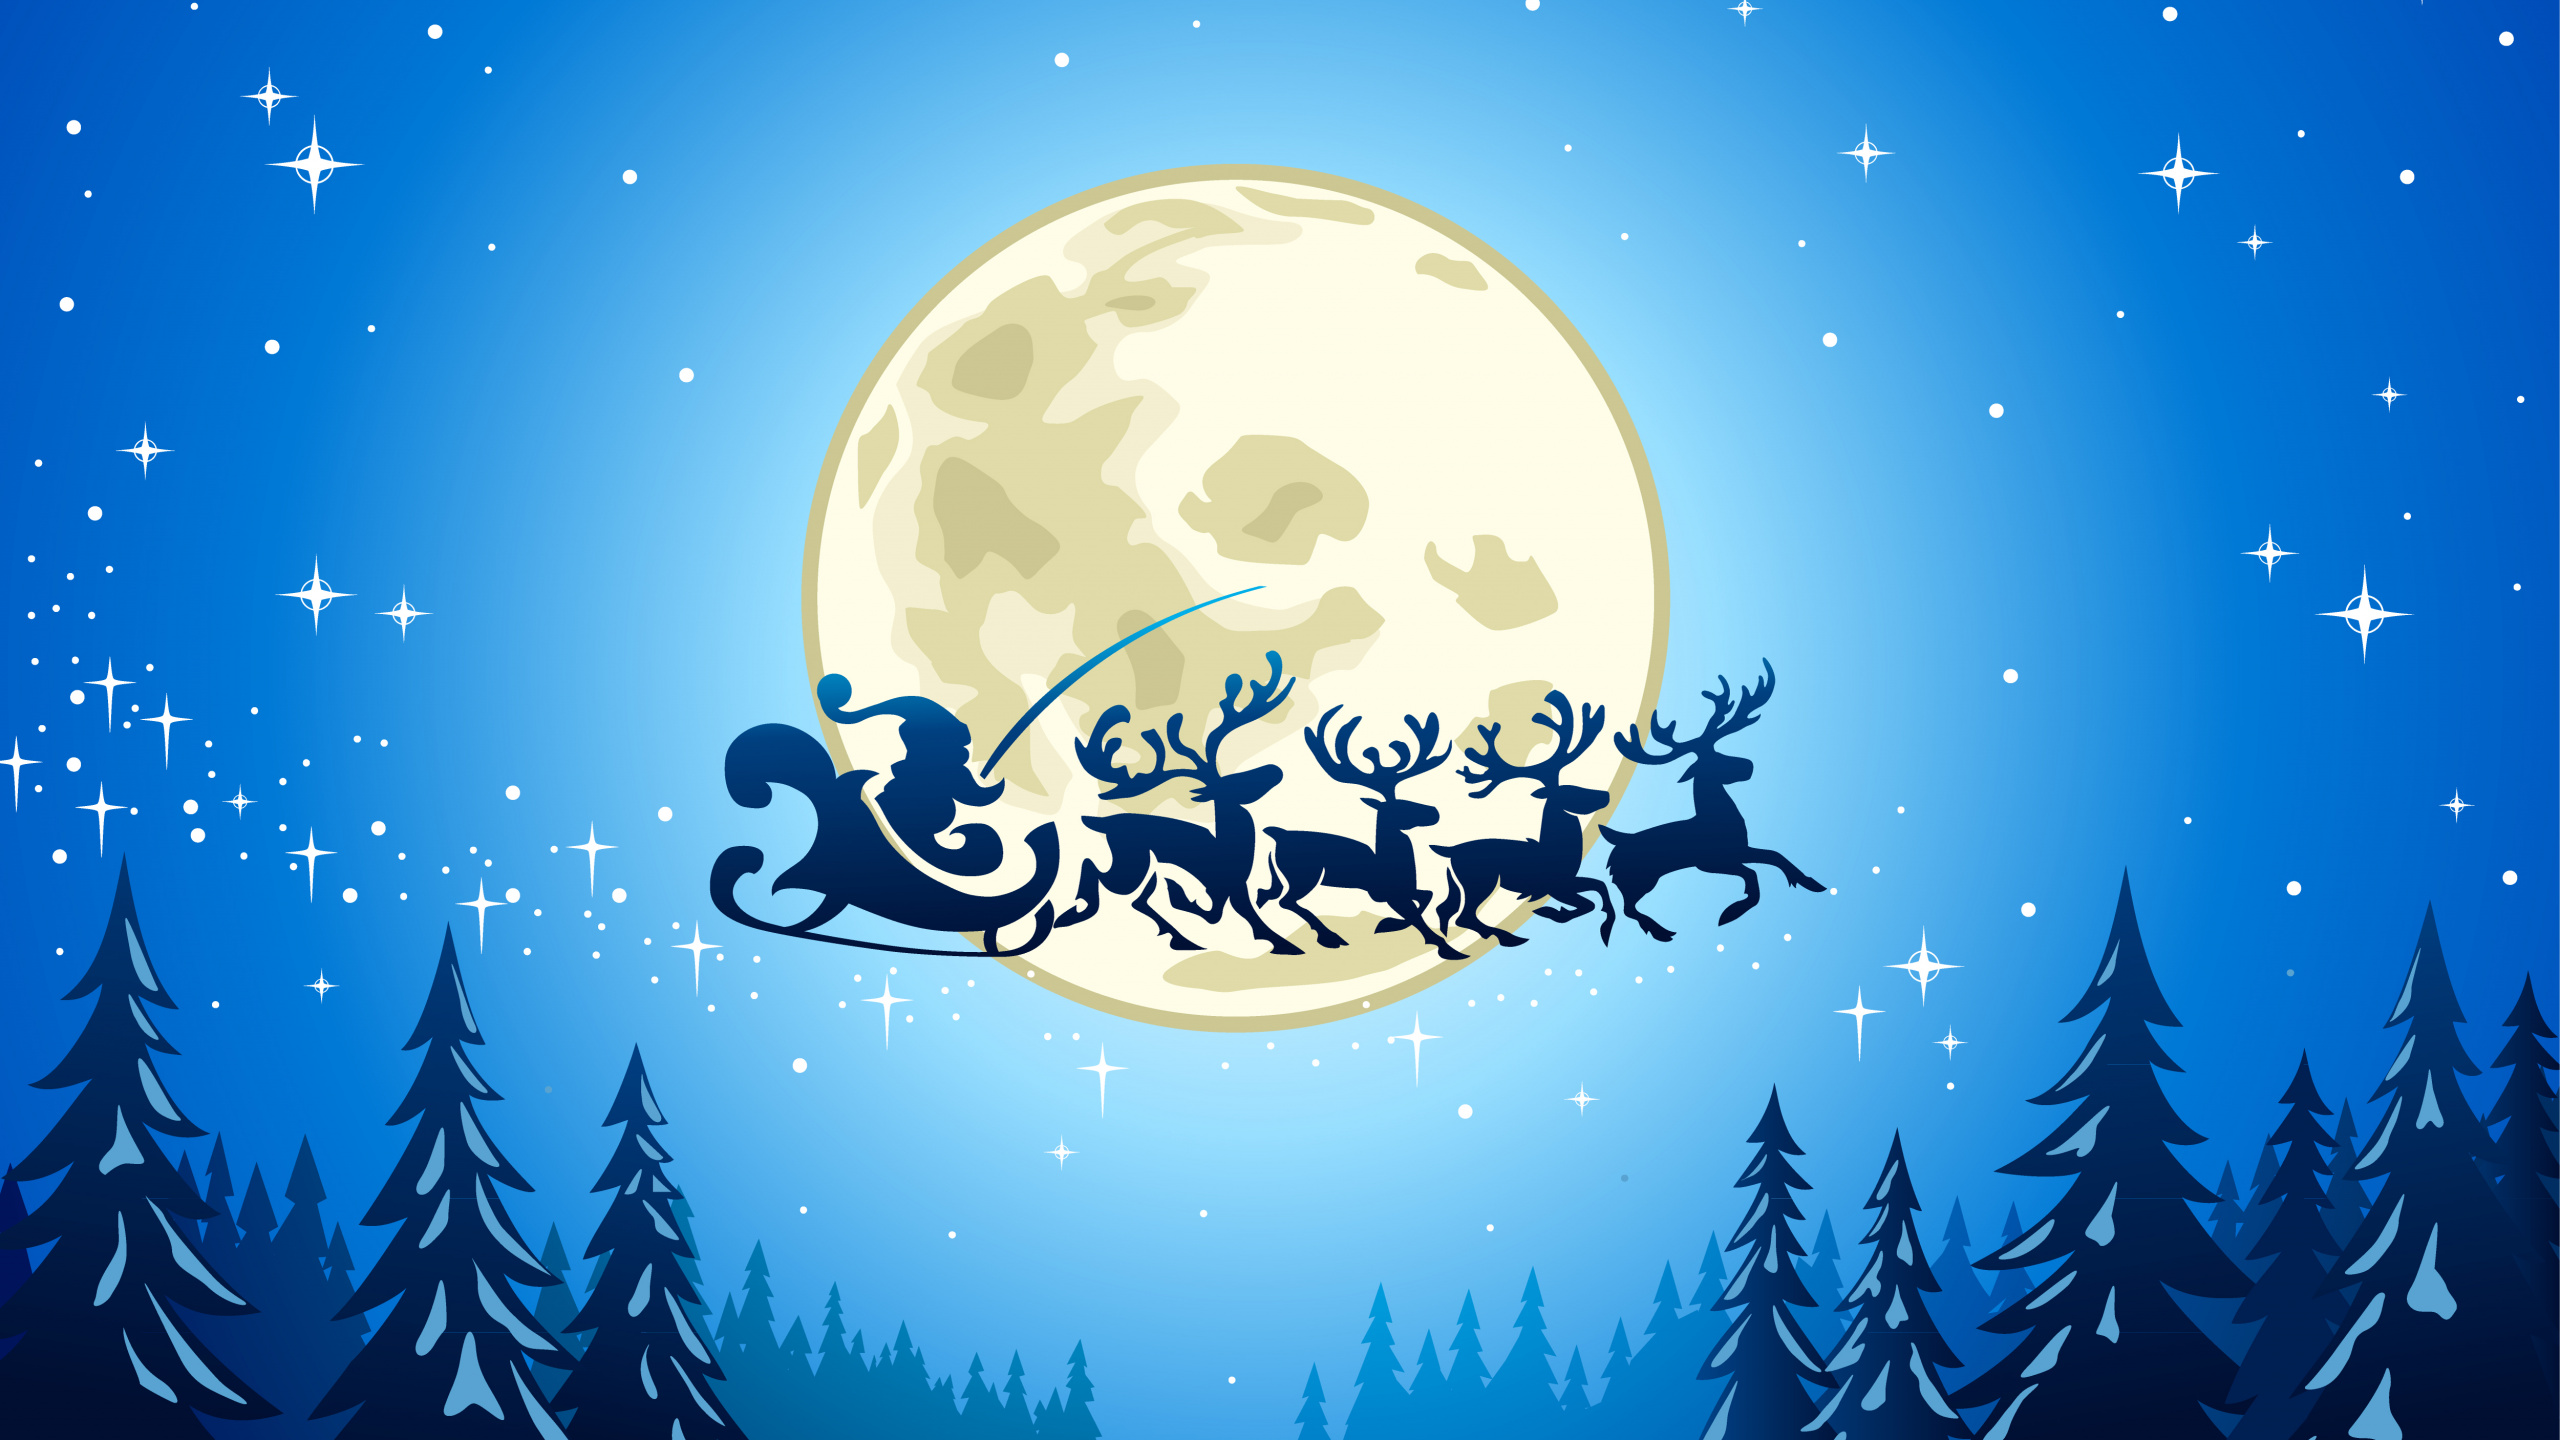 Weihnachten, Weihnachtsmann, Illustration, Mond, Ded Moroz. Wallpaper in 2560x1440 Resolution